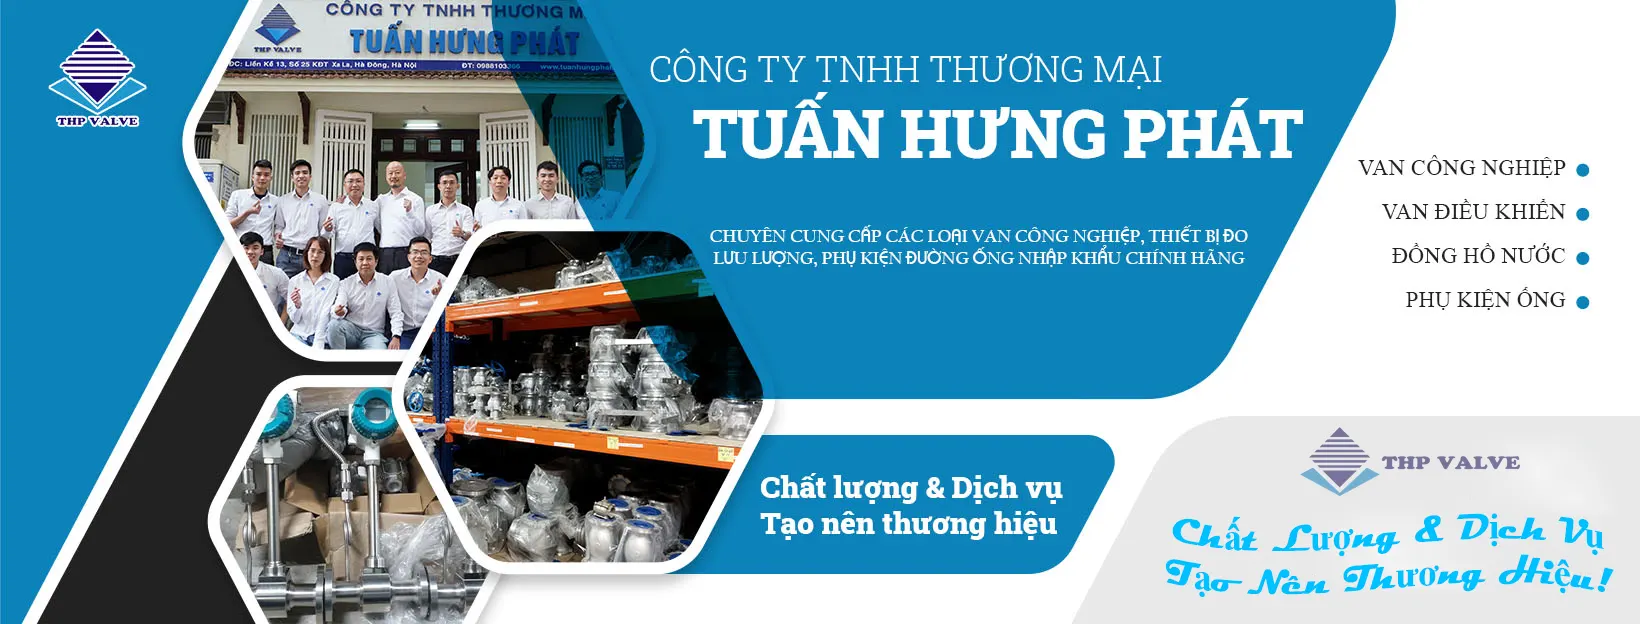 Banner Tuấn Hưng Phát - Vankhinen.vn